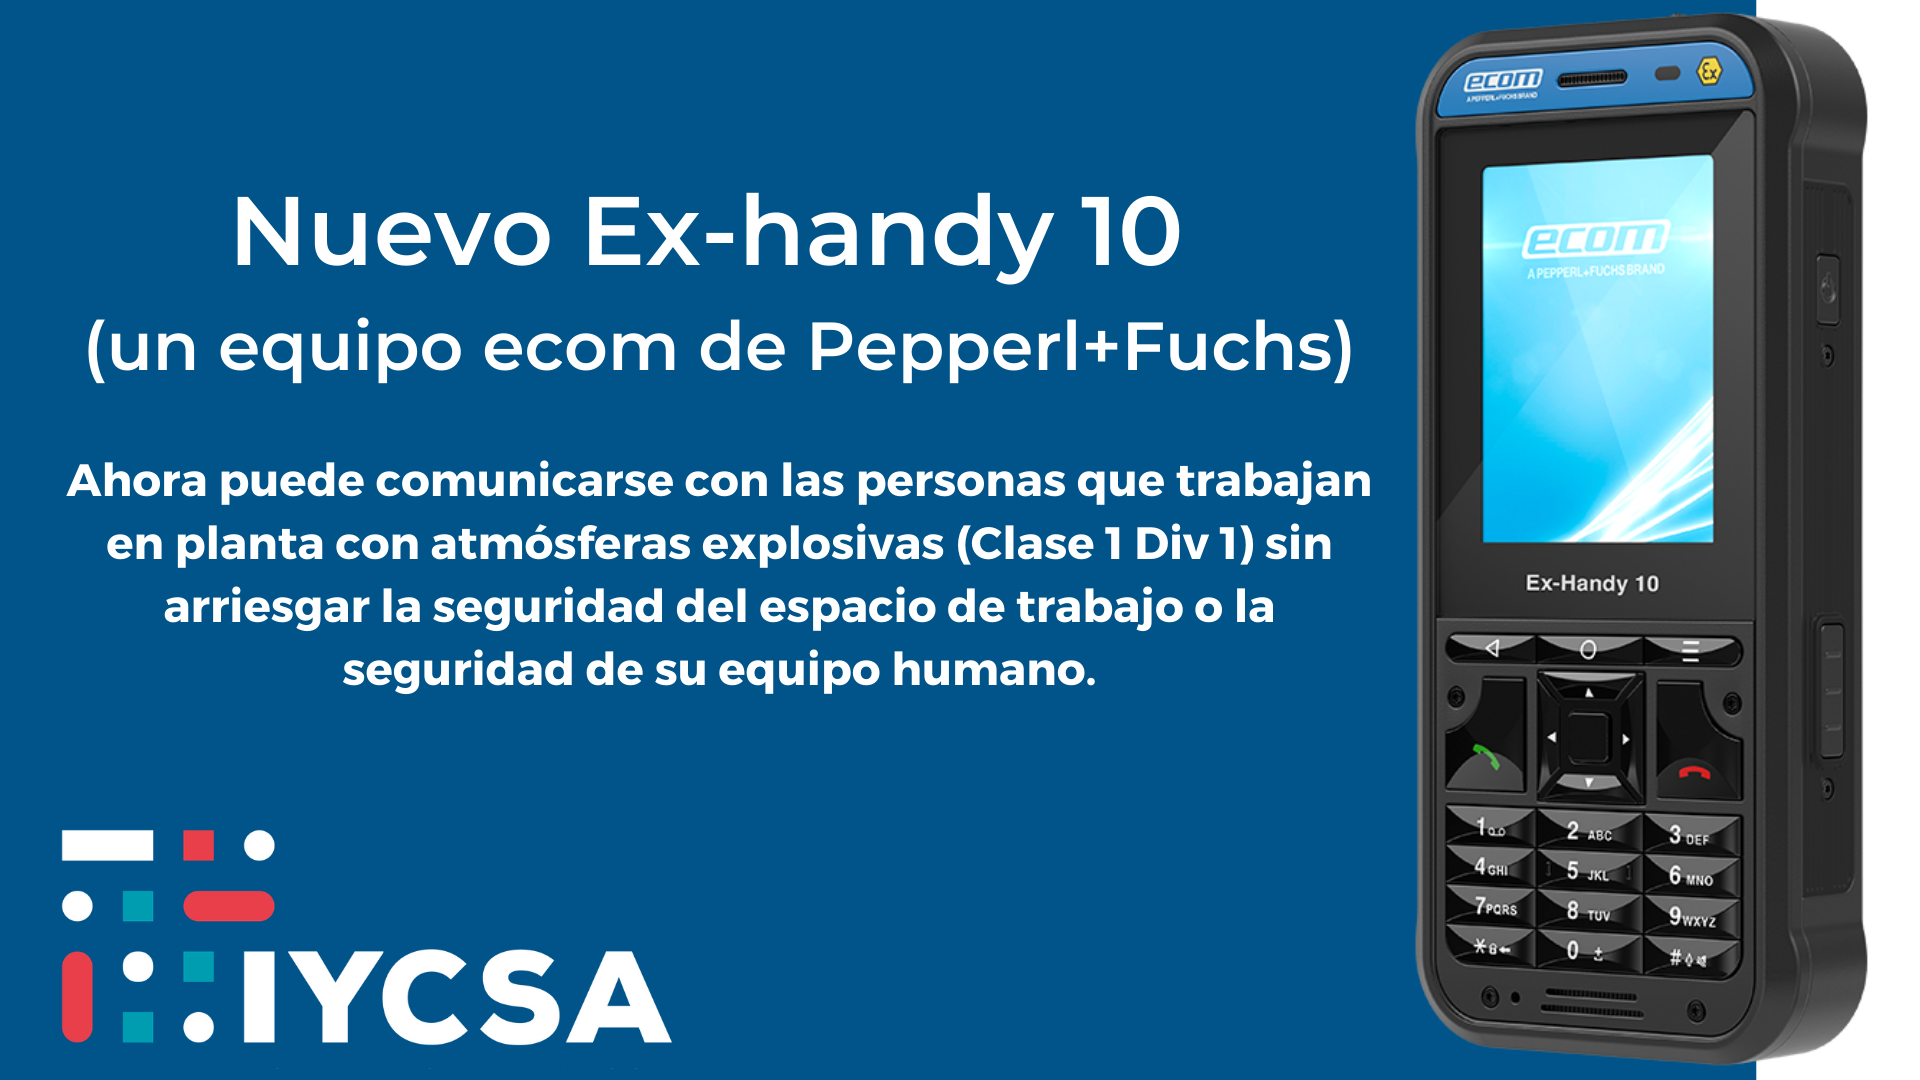 Nuevo Ex-handy 10 (E-com de Pepperl+Fuchs (10)